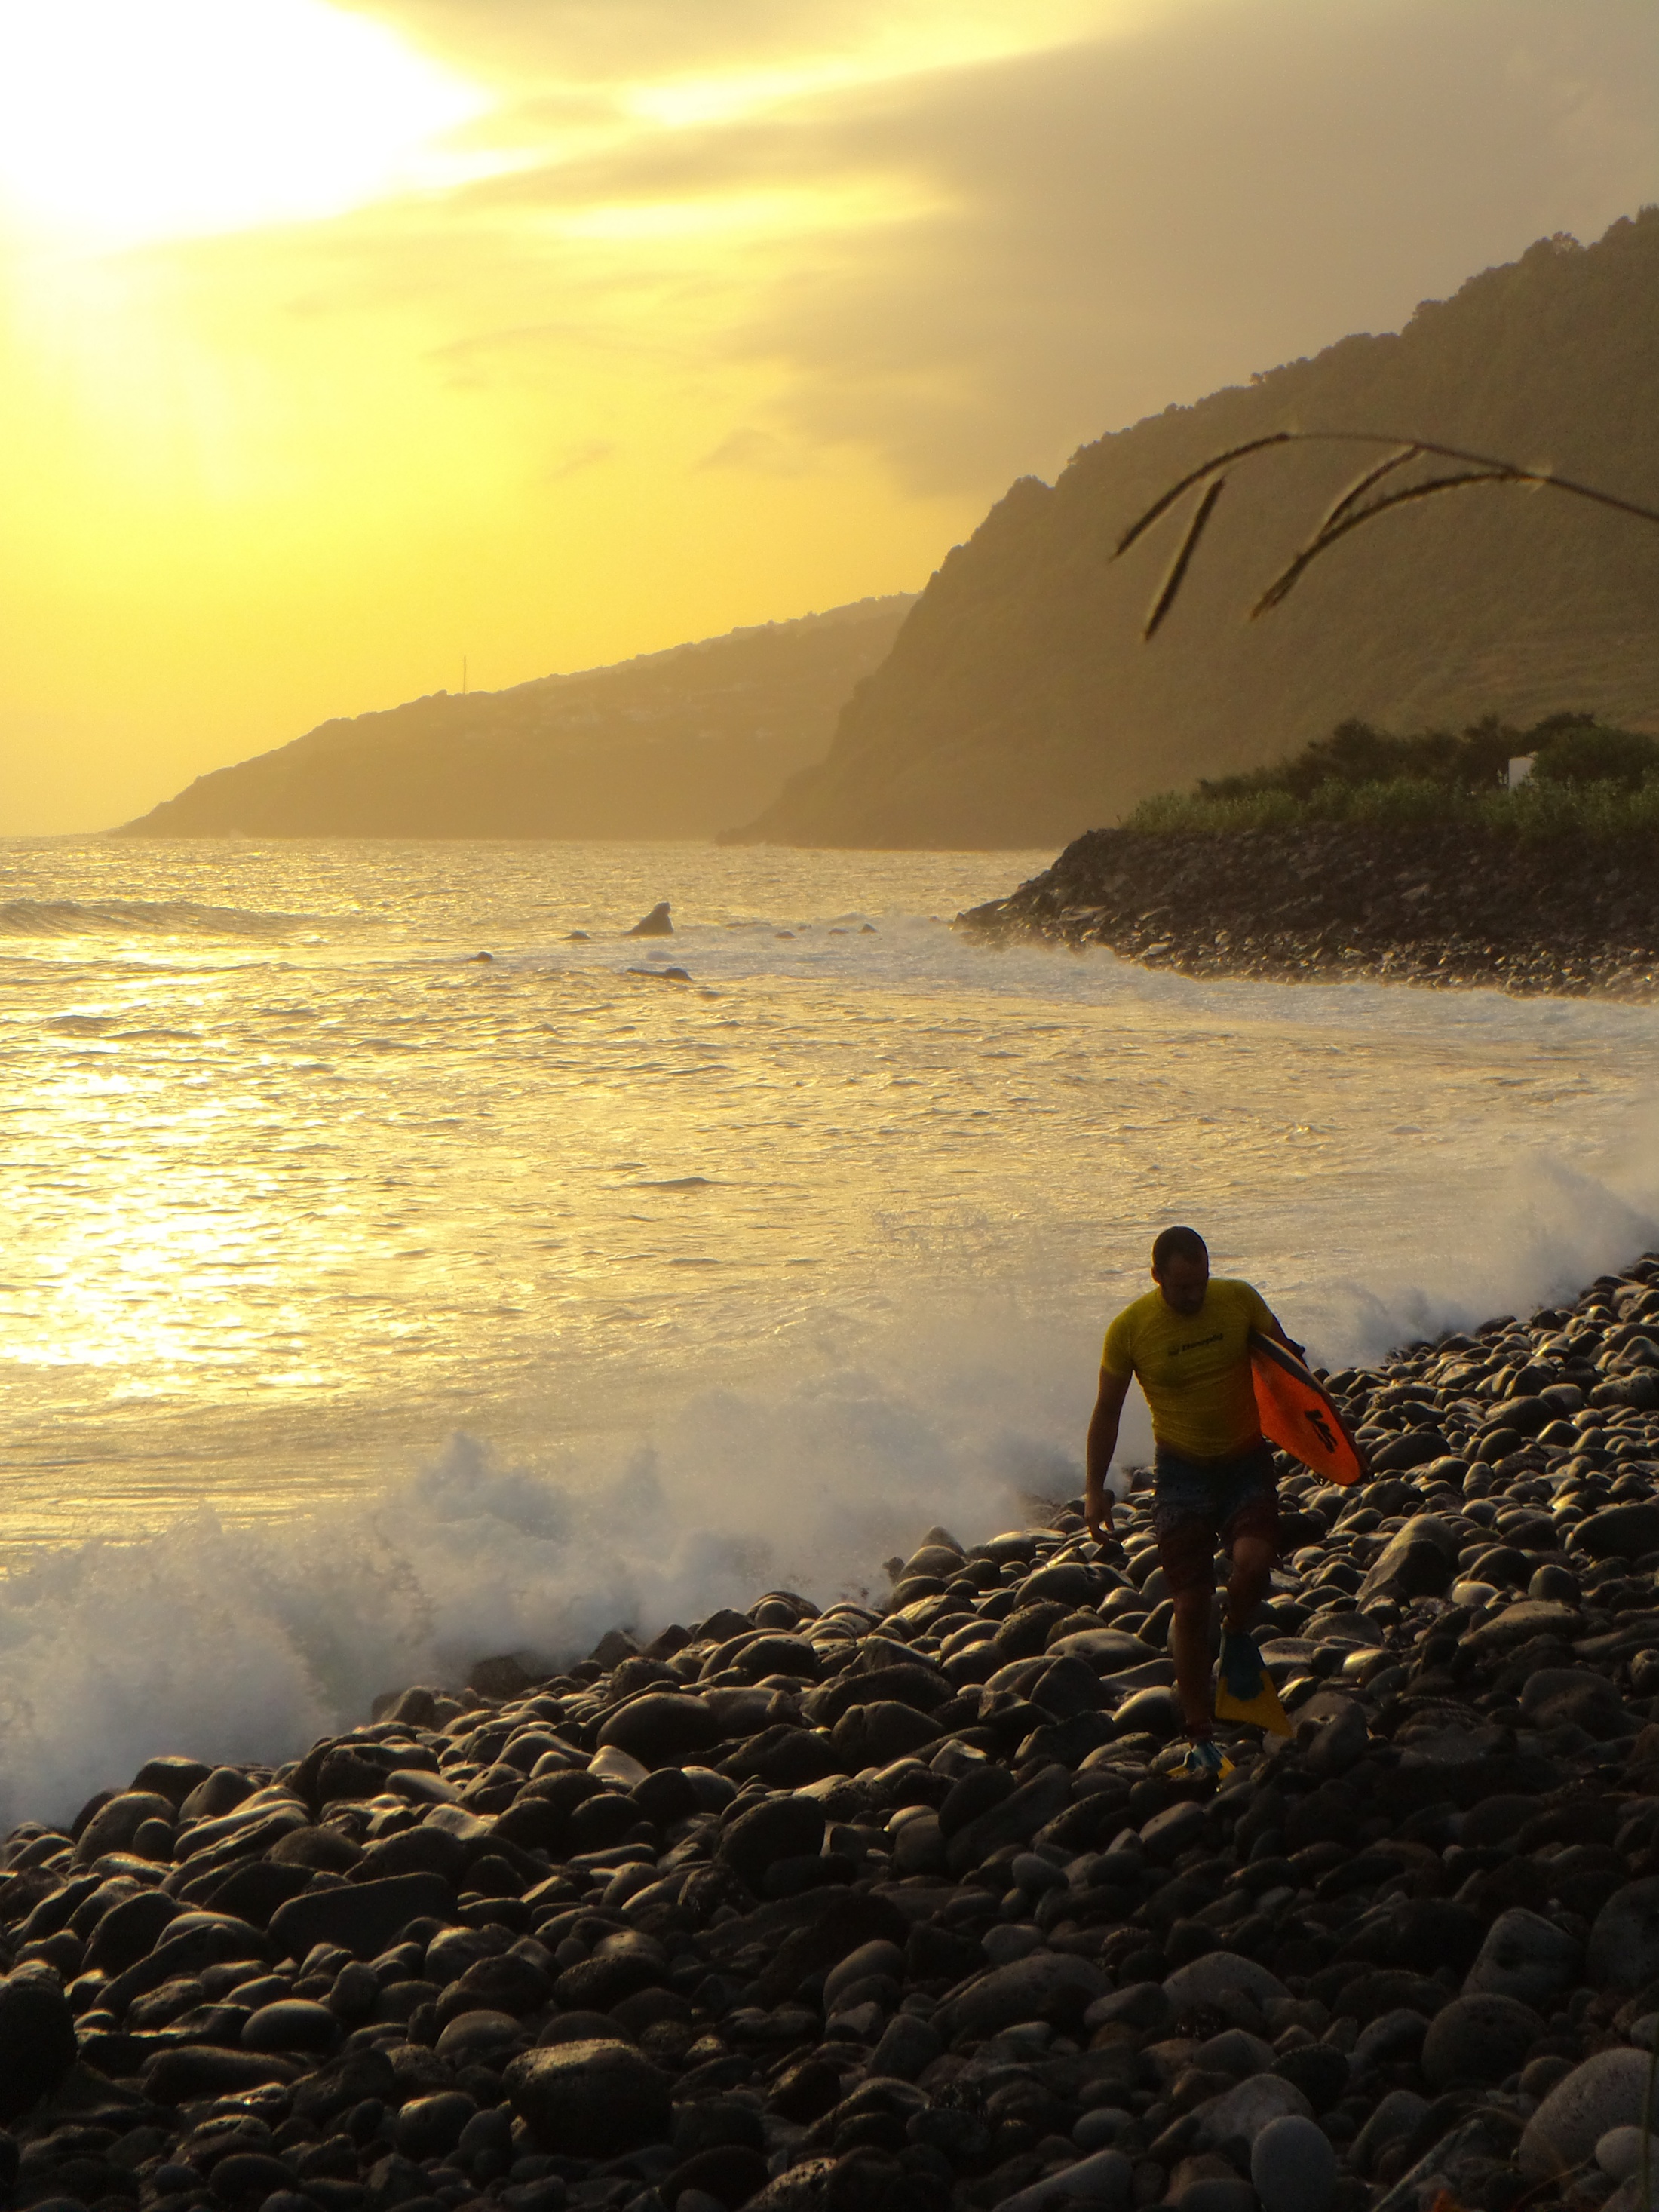 Saída de água num “rolo” de uma fajã paradisíaca, em fim de tarde, na ilha de São Jorge. 
Fotografia: Vera Andrade